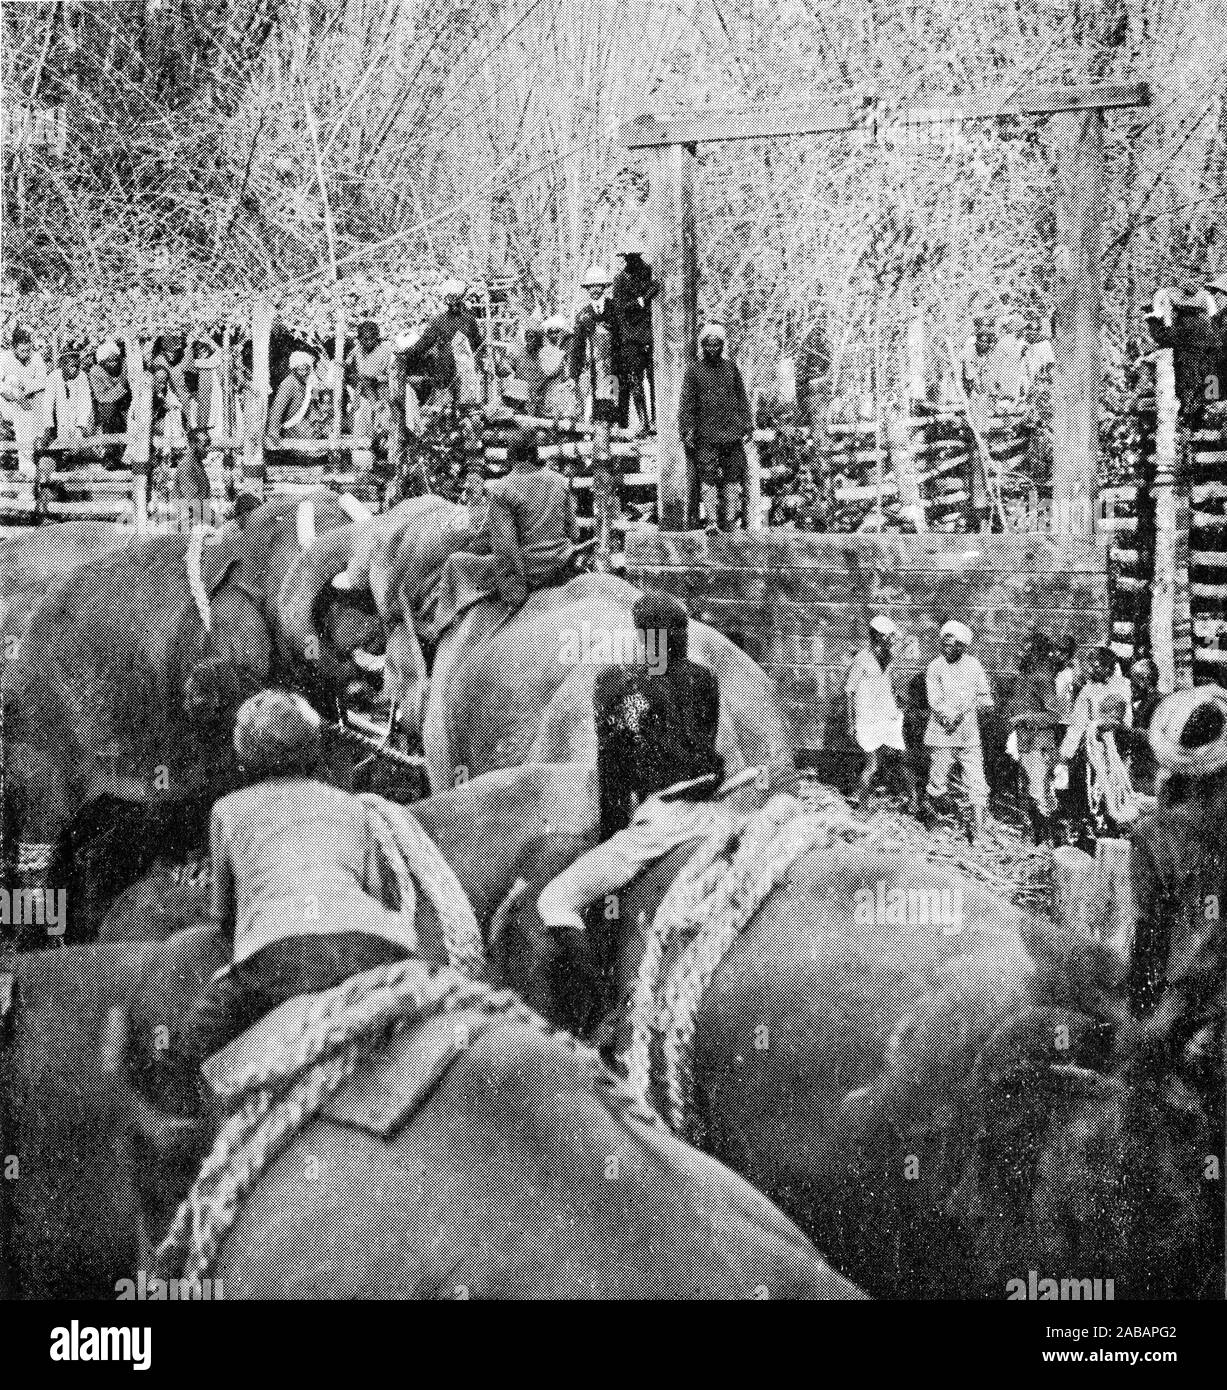 Fotografia di mezzitoni di teh Principe di Galles la visione di una lotta organizzata tra gli elefanti (Elephas maximus indicus) in un stockade in Mysore, India, 1906. Foto Stock